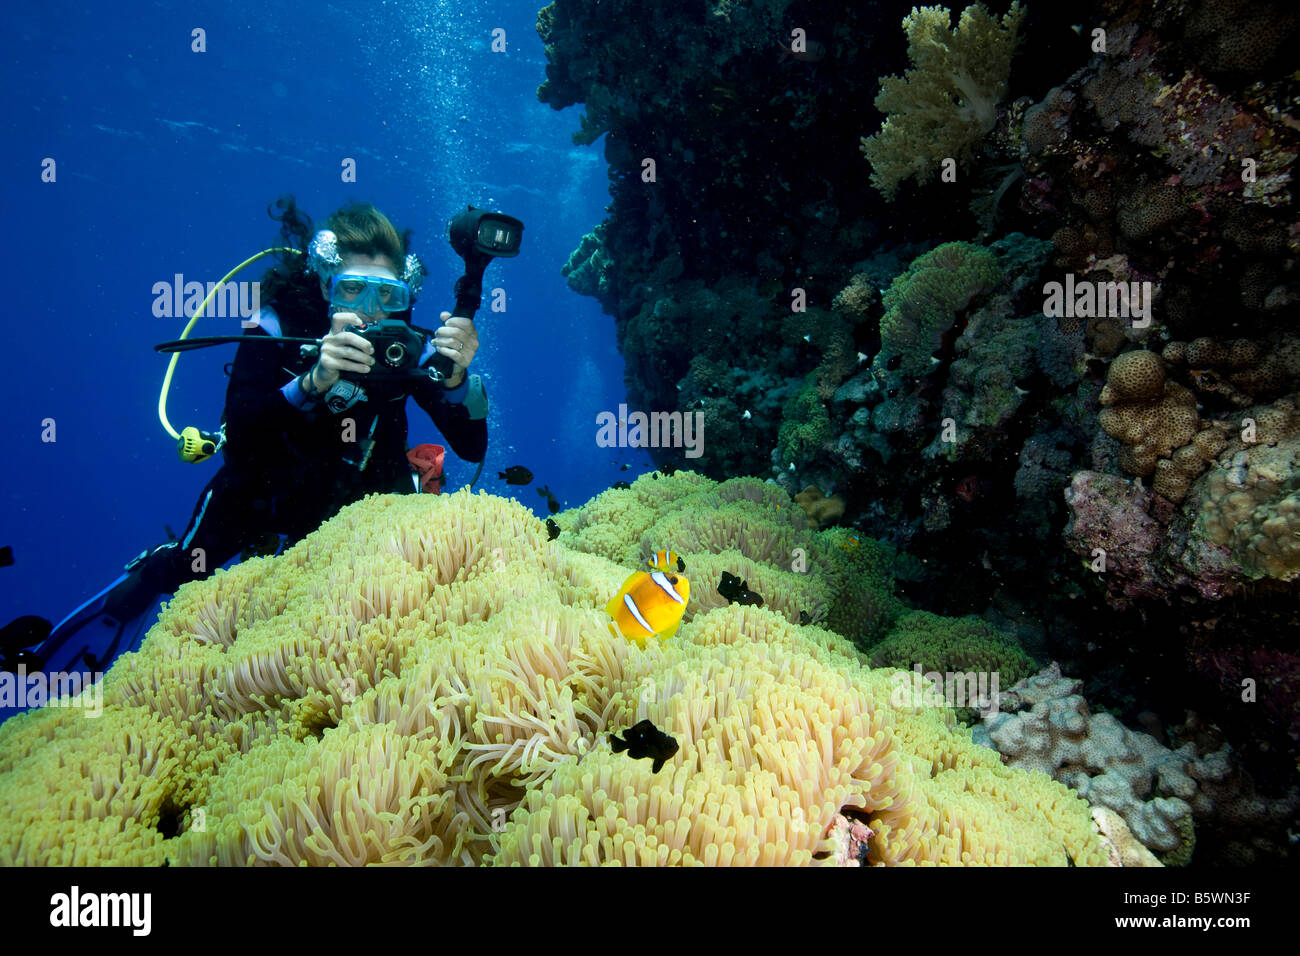 Underwater photographer and Damselfish, Red Sea Stock Photo